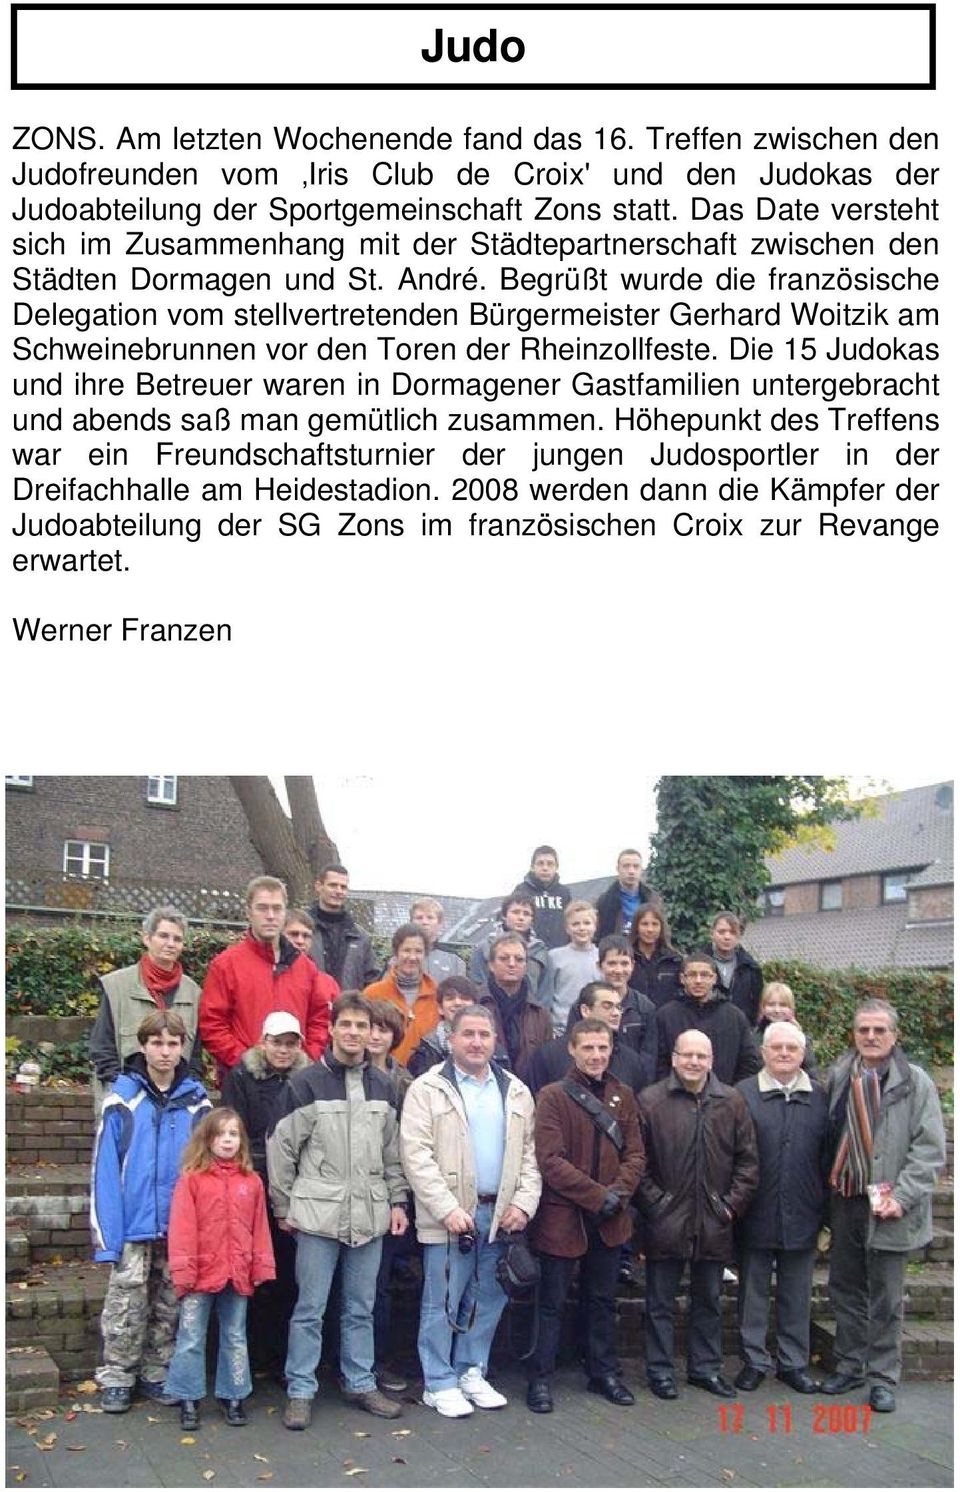 Begrüßt wurde die französische Delegation vom stellvertretenden Bürgermeister Gerhard Woitzik am Schweinebrunnen vor den Toren der Rheinzollfeste.